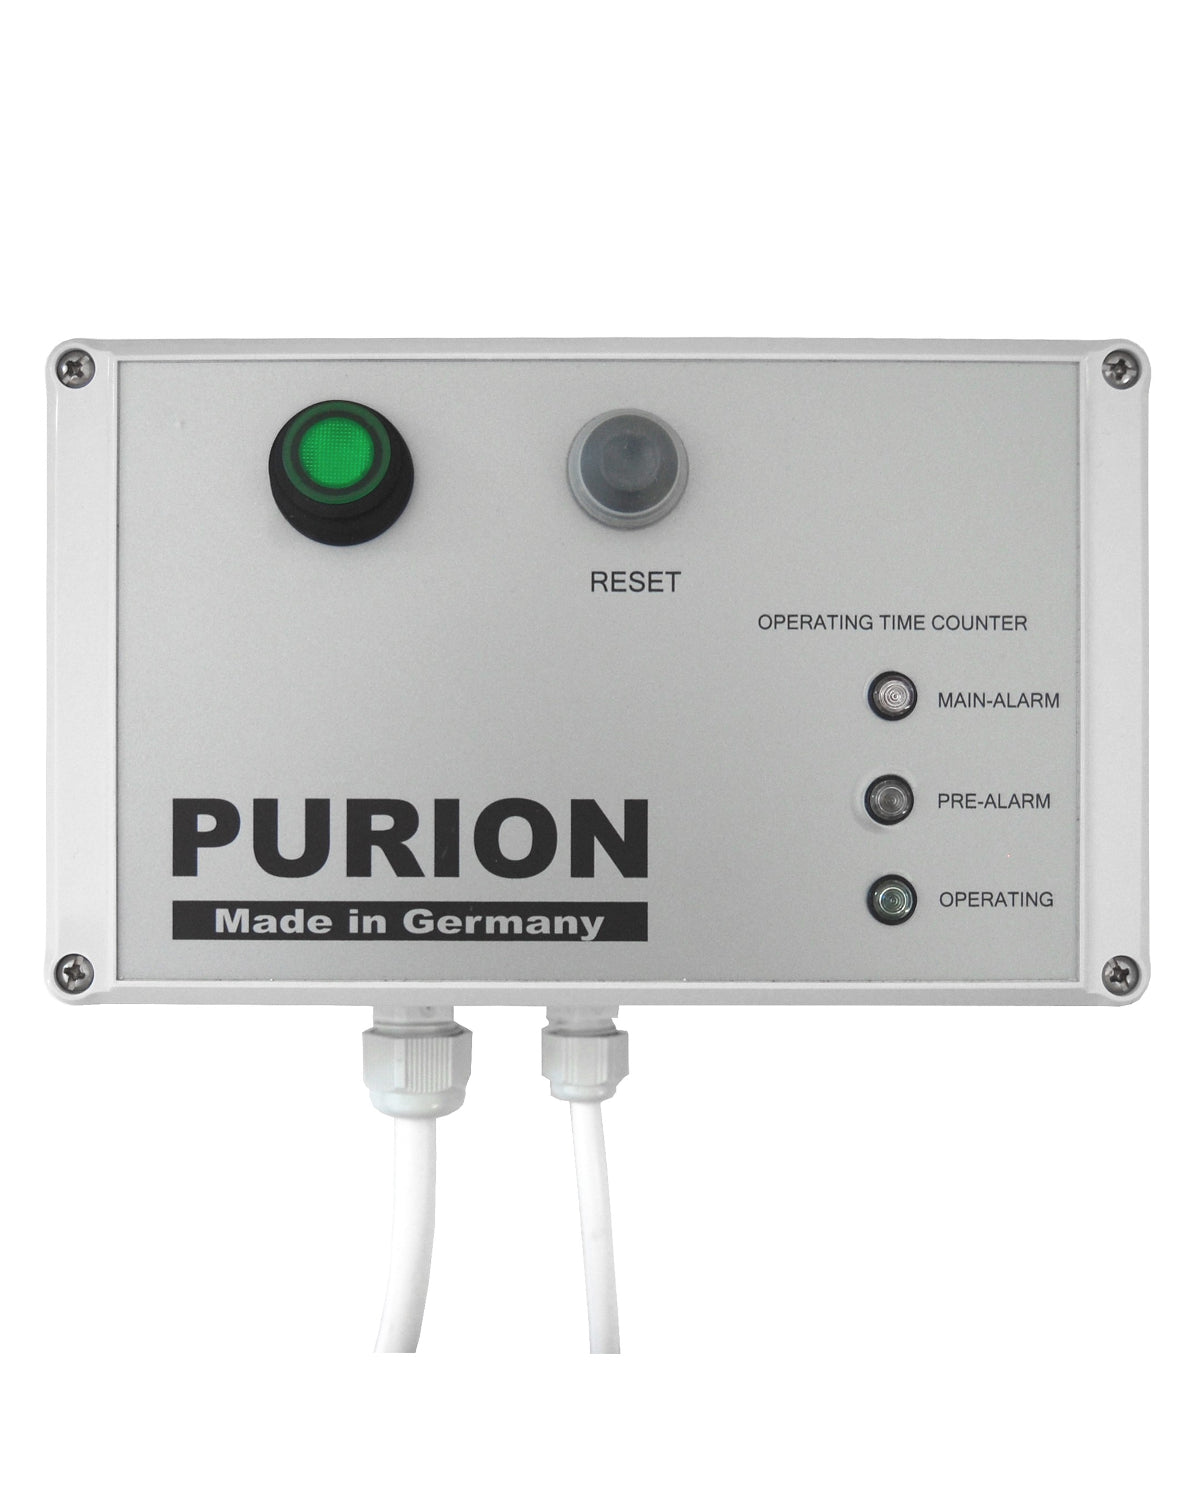 Der AIRPURION 300 Active Silent Basic Ionisator der PURION GmbH ist eine leistungsstarke Luftentkeimungslösung, die mit der AIRPURION 300 Active-Technologie eine außergewöhnliche Desinfektionsleistung bietet.